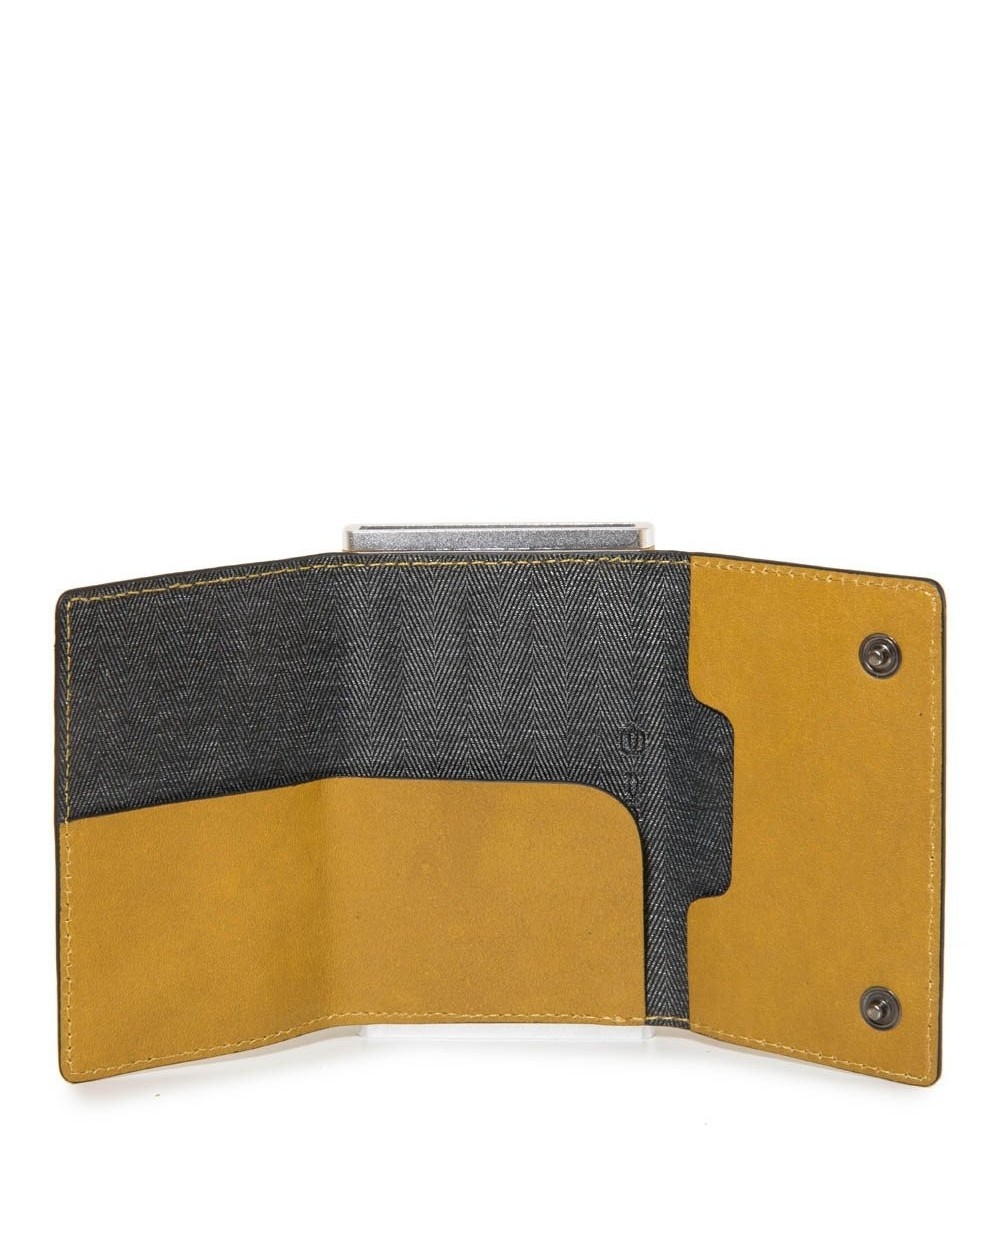 Portafoglio da uomo Piquadro Black Square PP4891B3R pelle giallo RFID per carte 